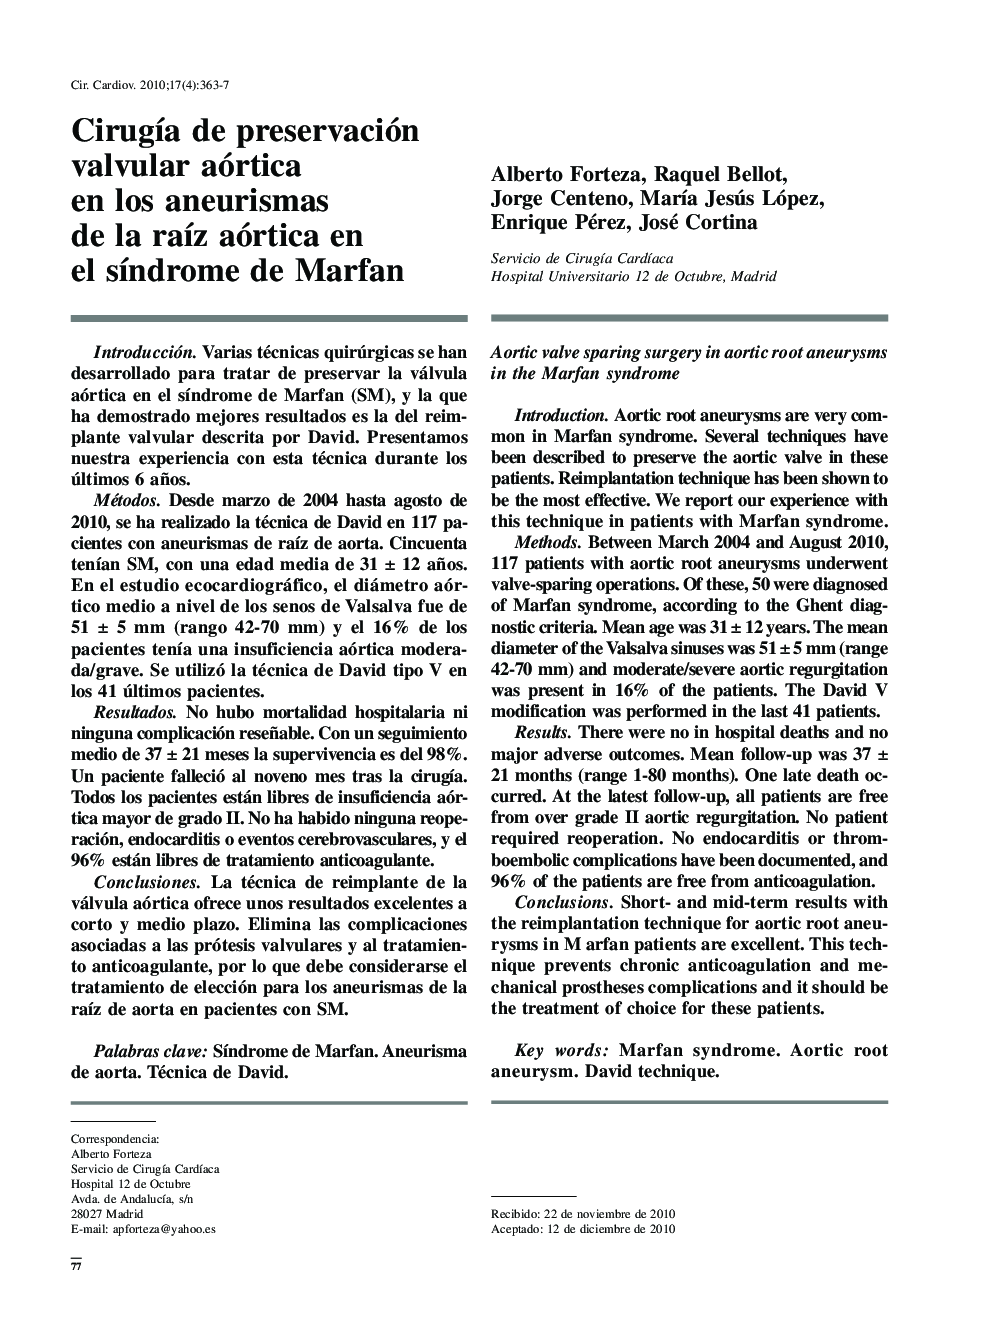 Cirugía de preservación valvular aórtica en los aneurismas de la raíz aórtica en el síndrome de Marfan